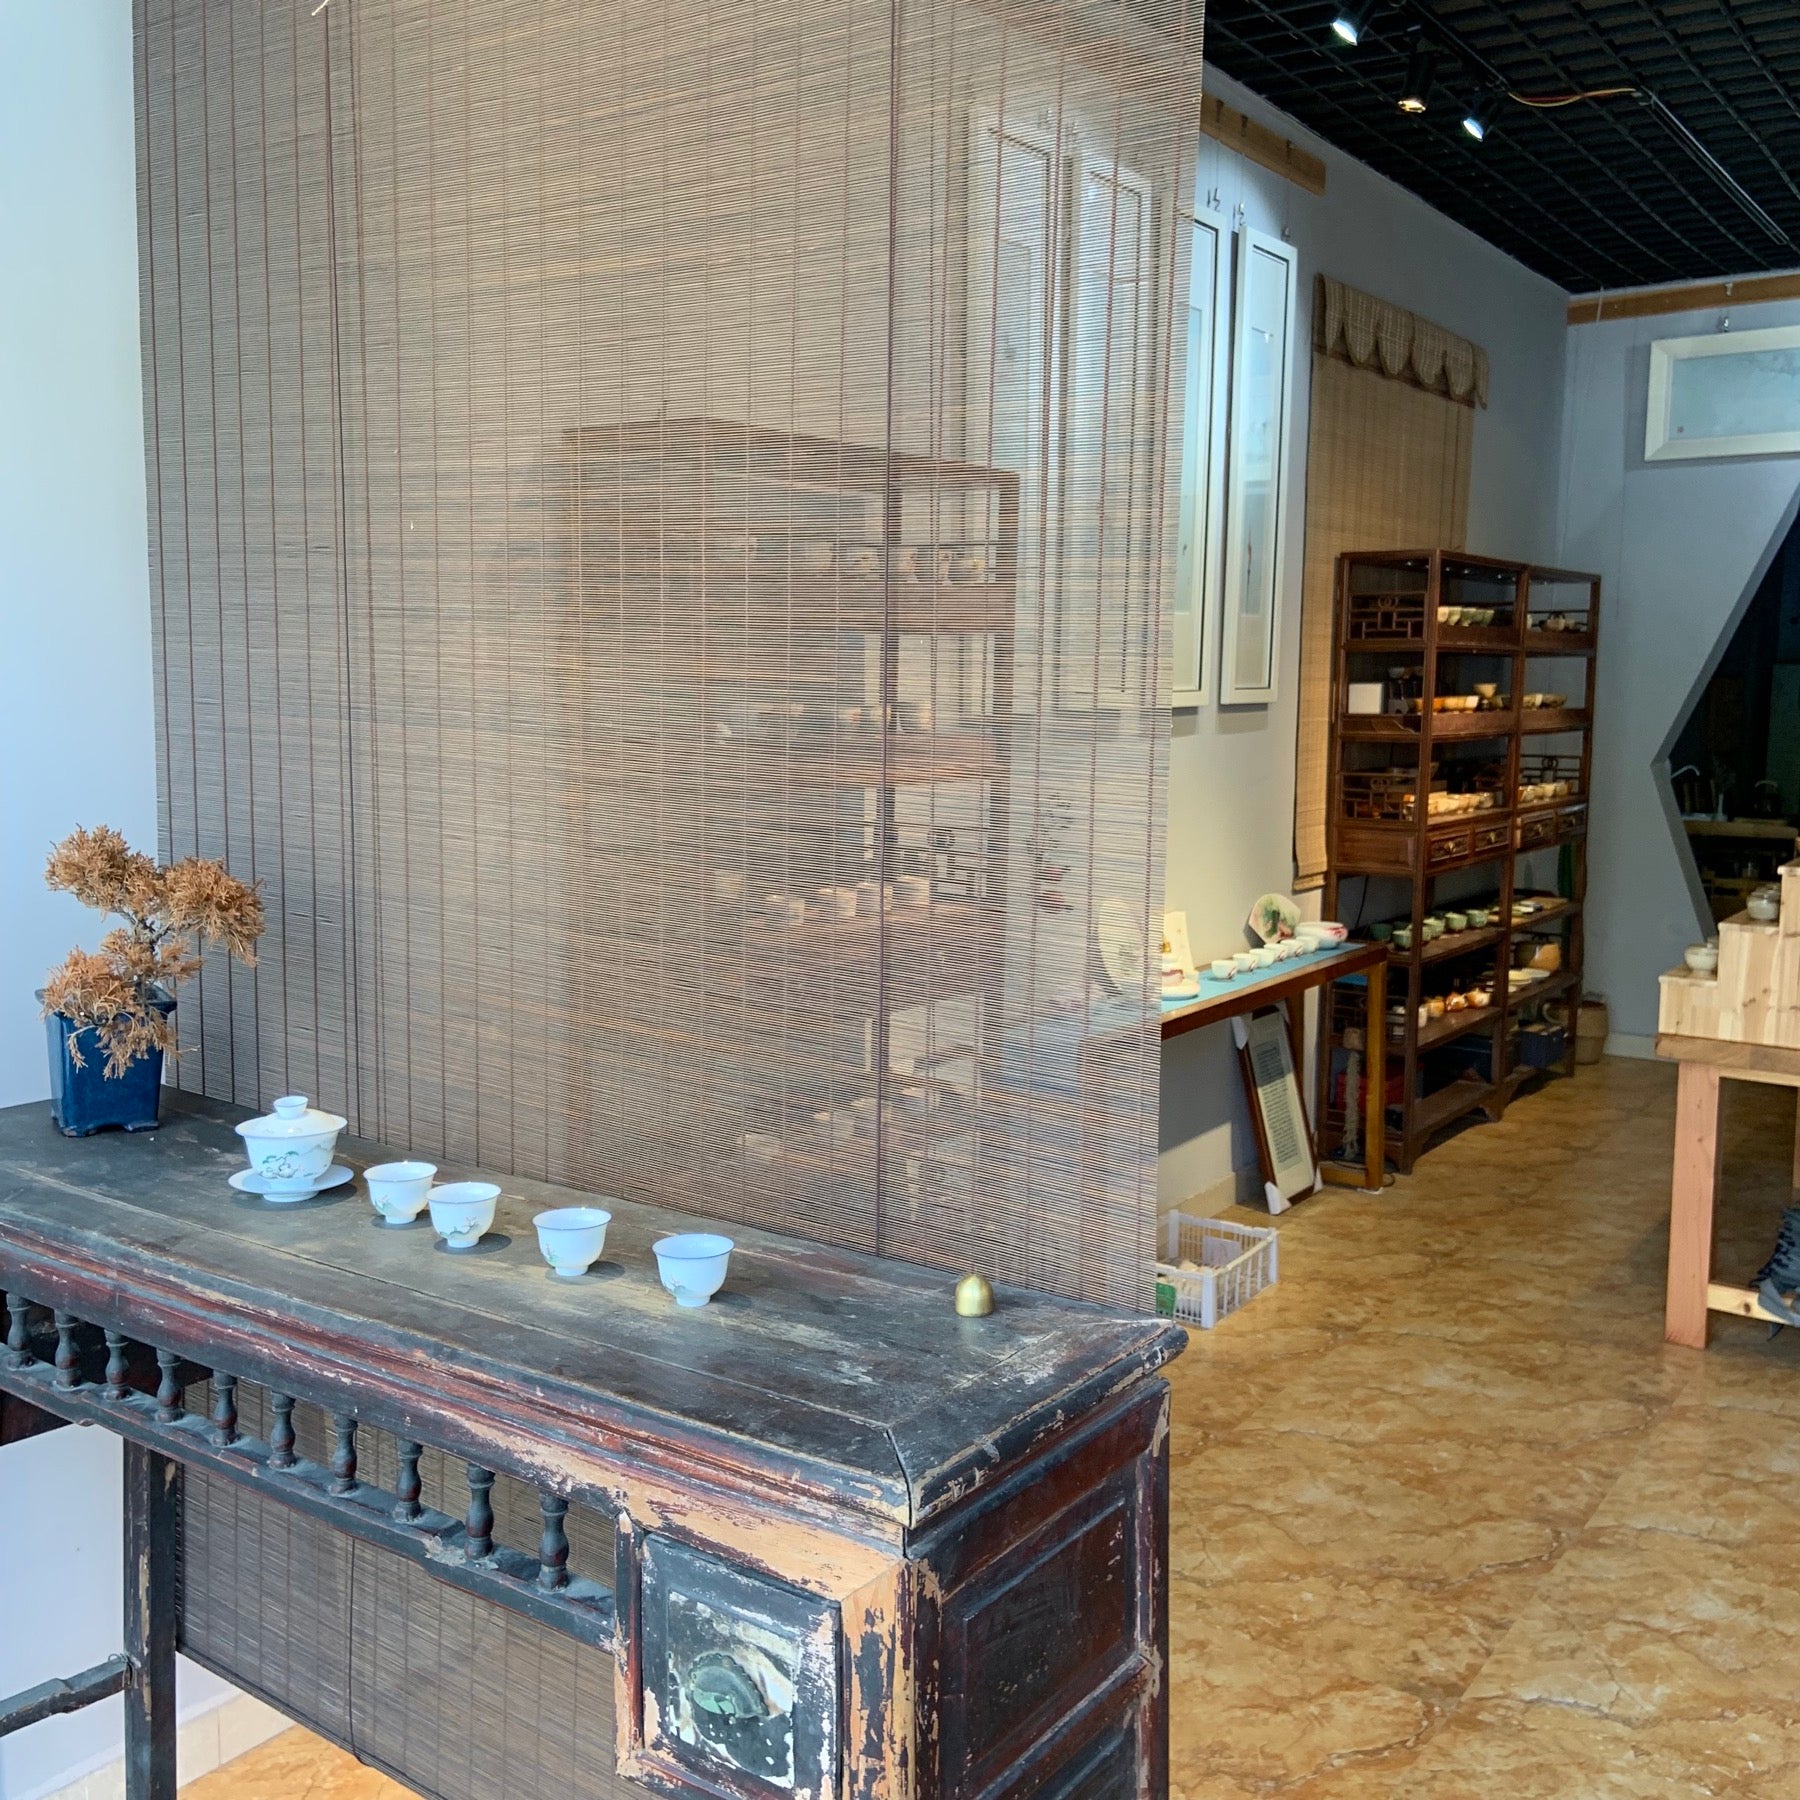 Teaware shop in Jingdezhen